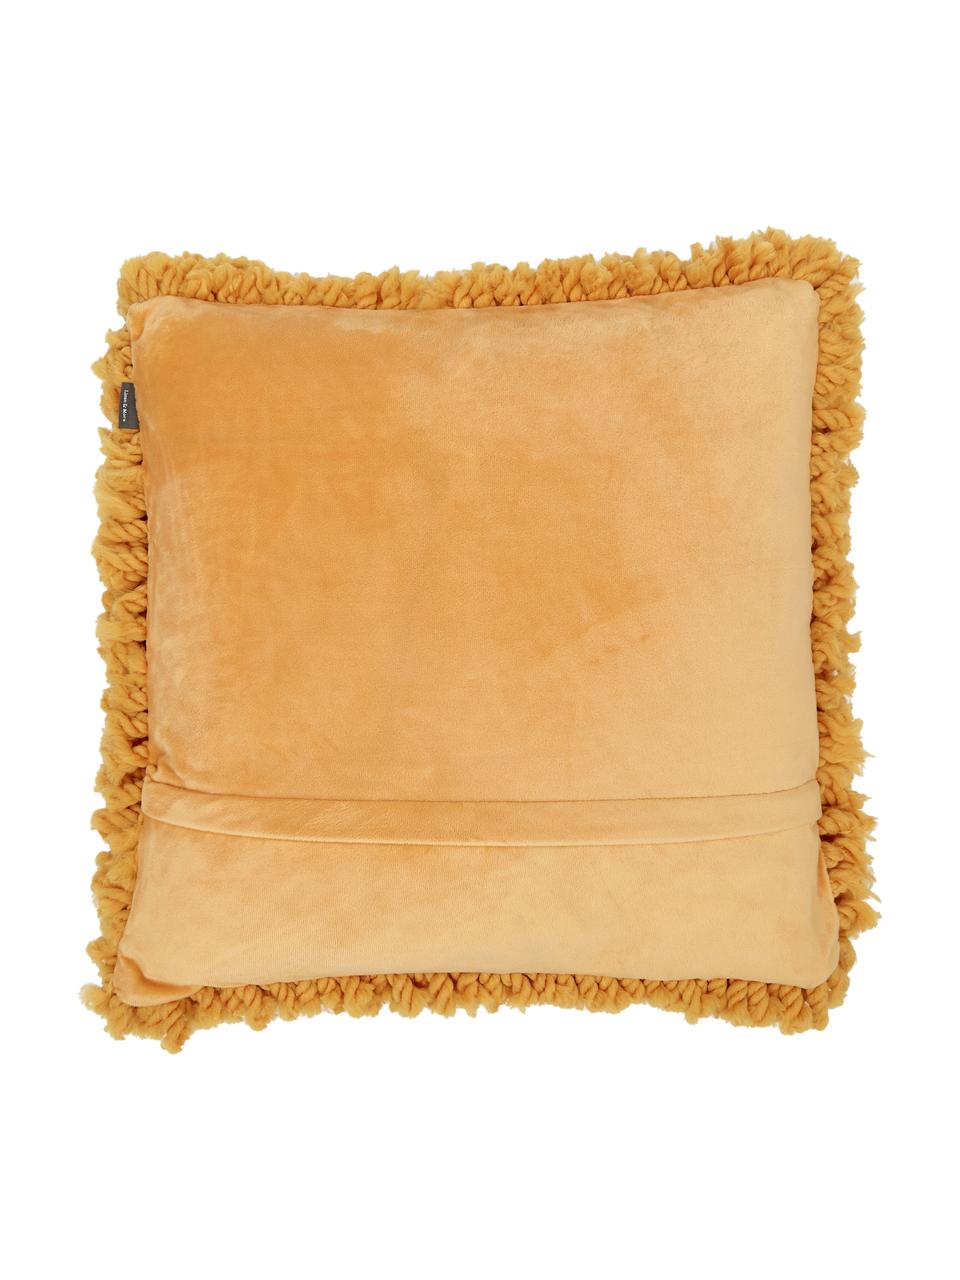 Poduszka z wypełnieniem Oscar, Tapicerka: 95% bawełna, 5% akryl, Brunatnożółty, S 50 x D 50 cm